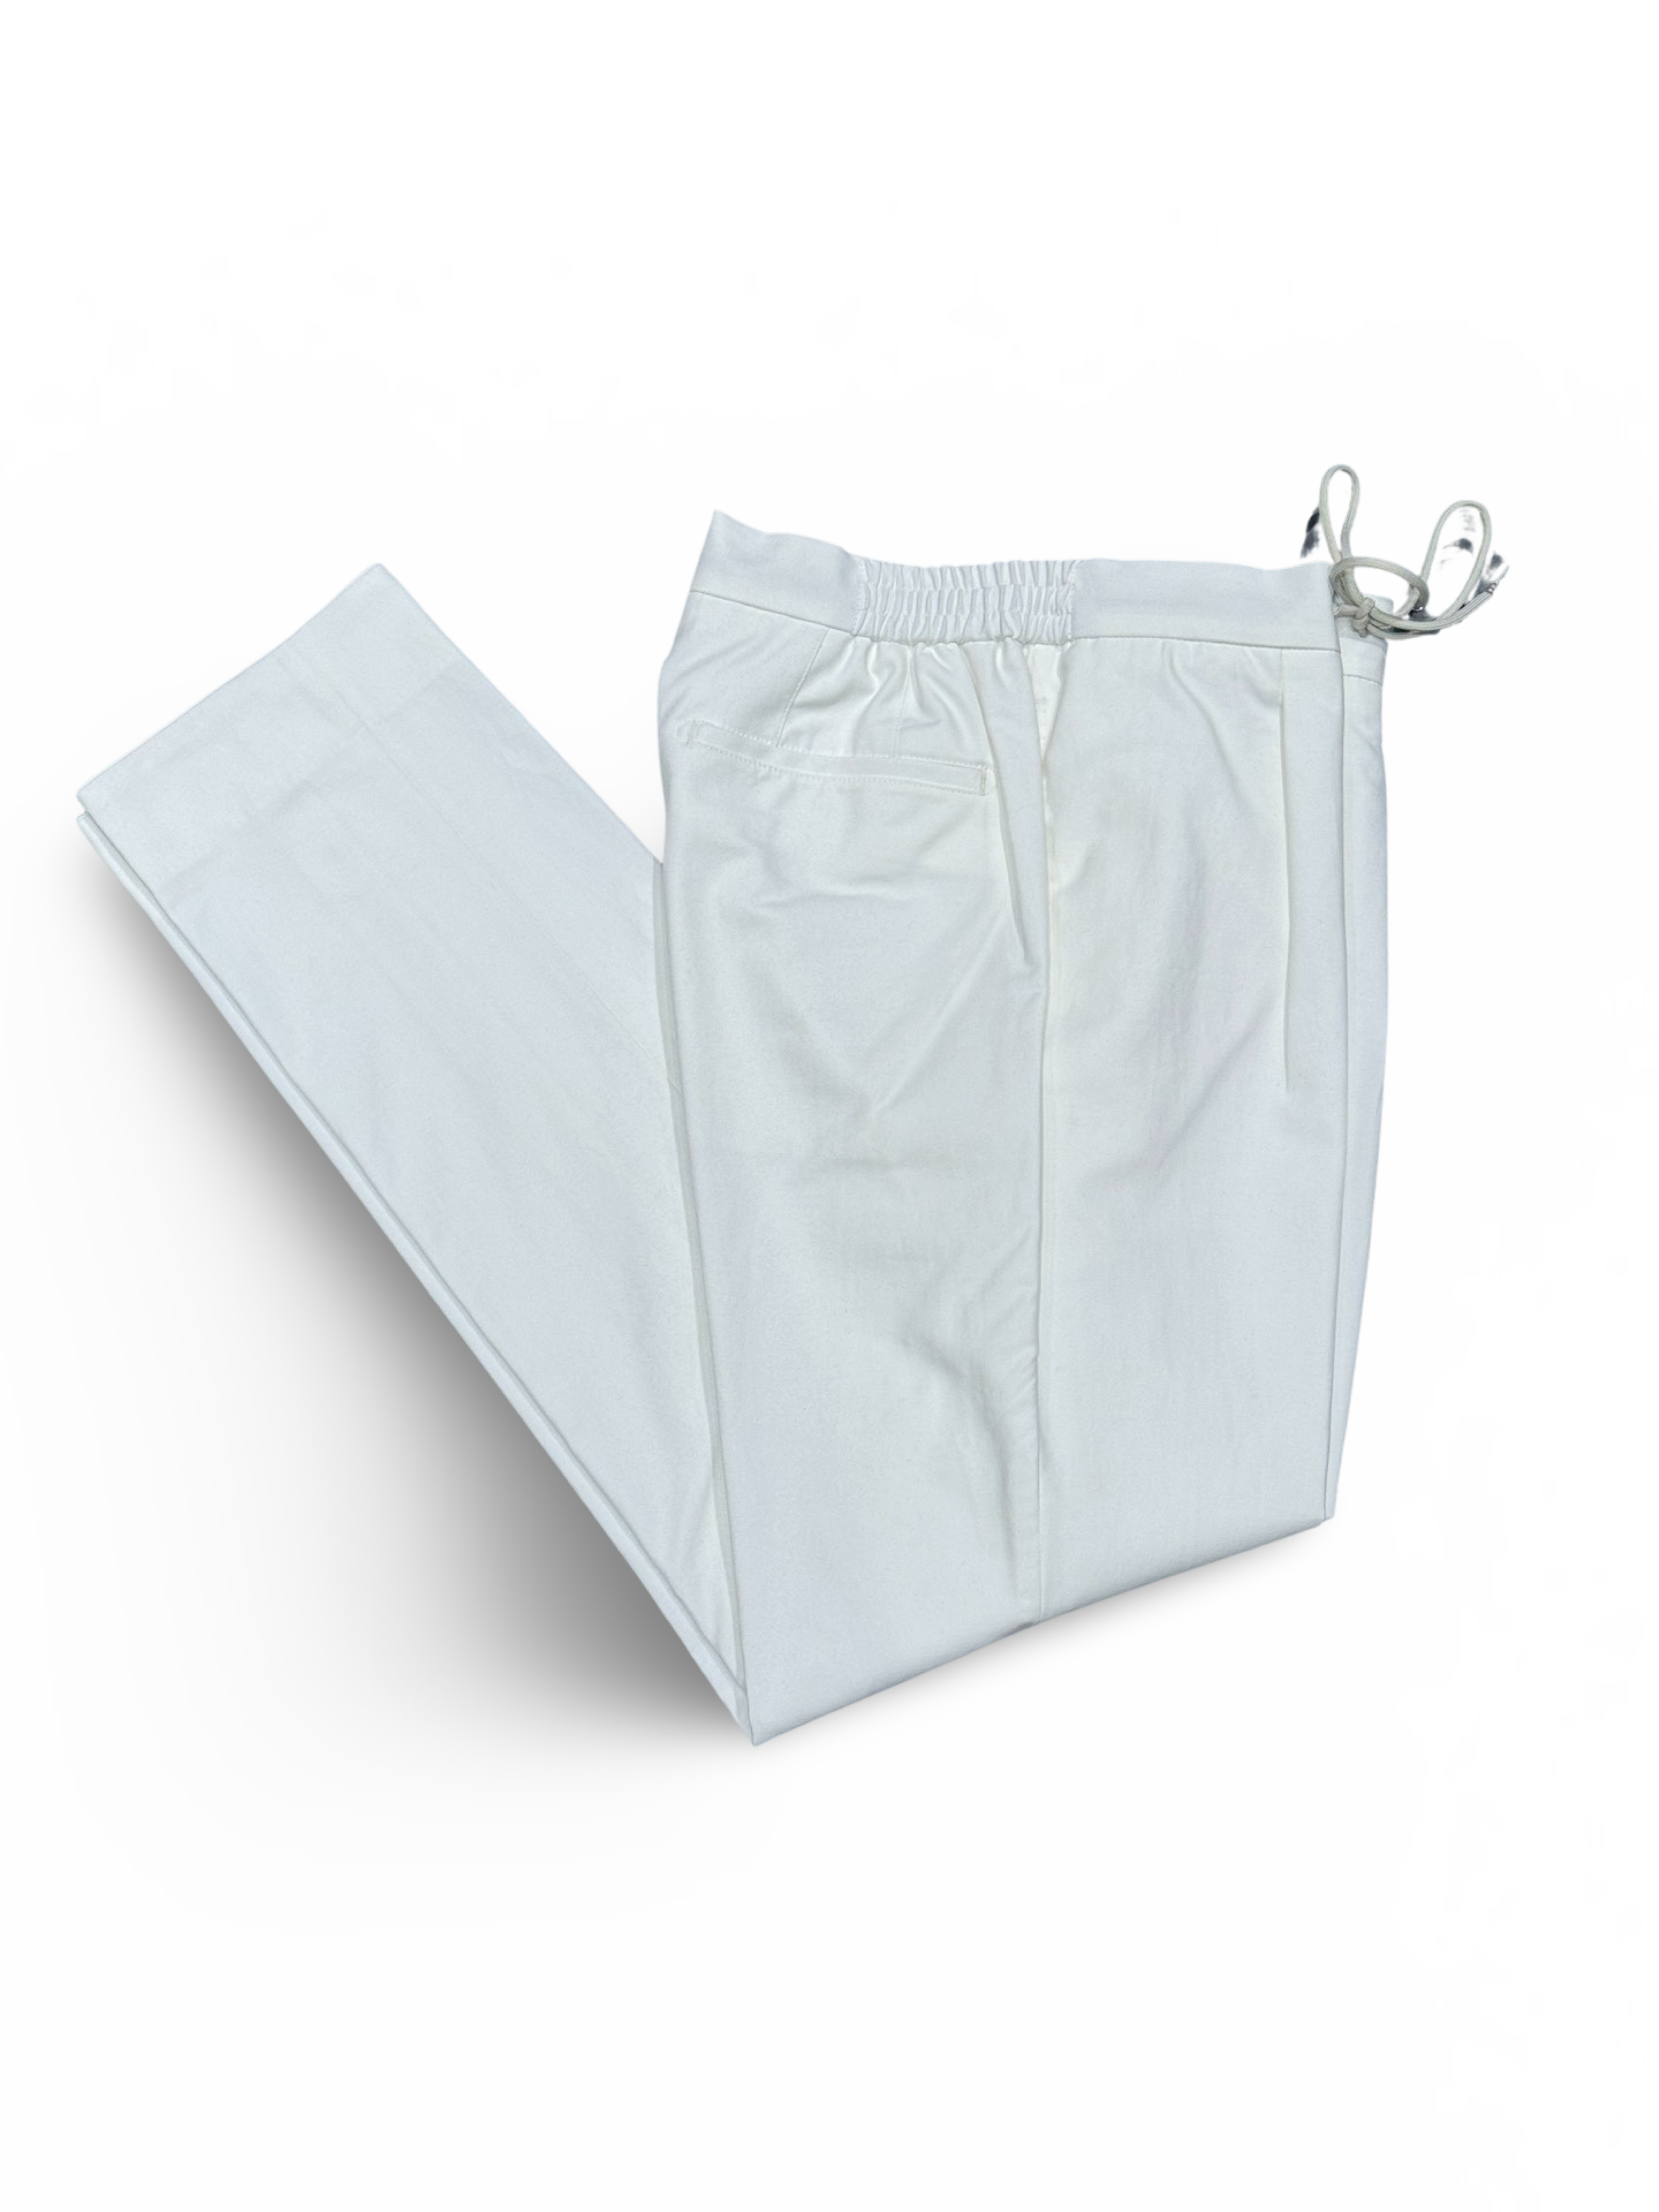 Lodge Pants - White Cotton Stretch